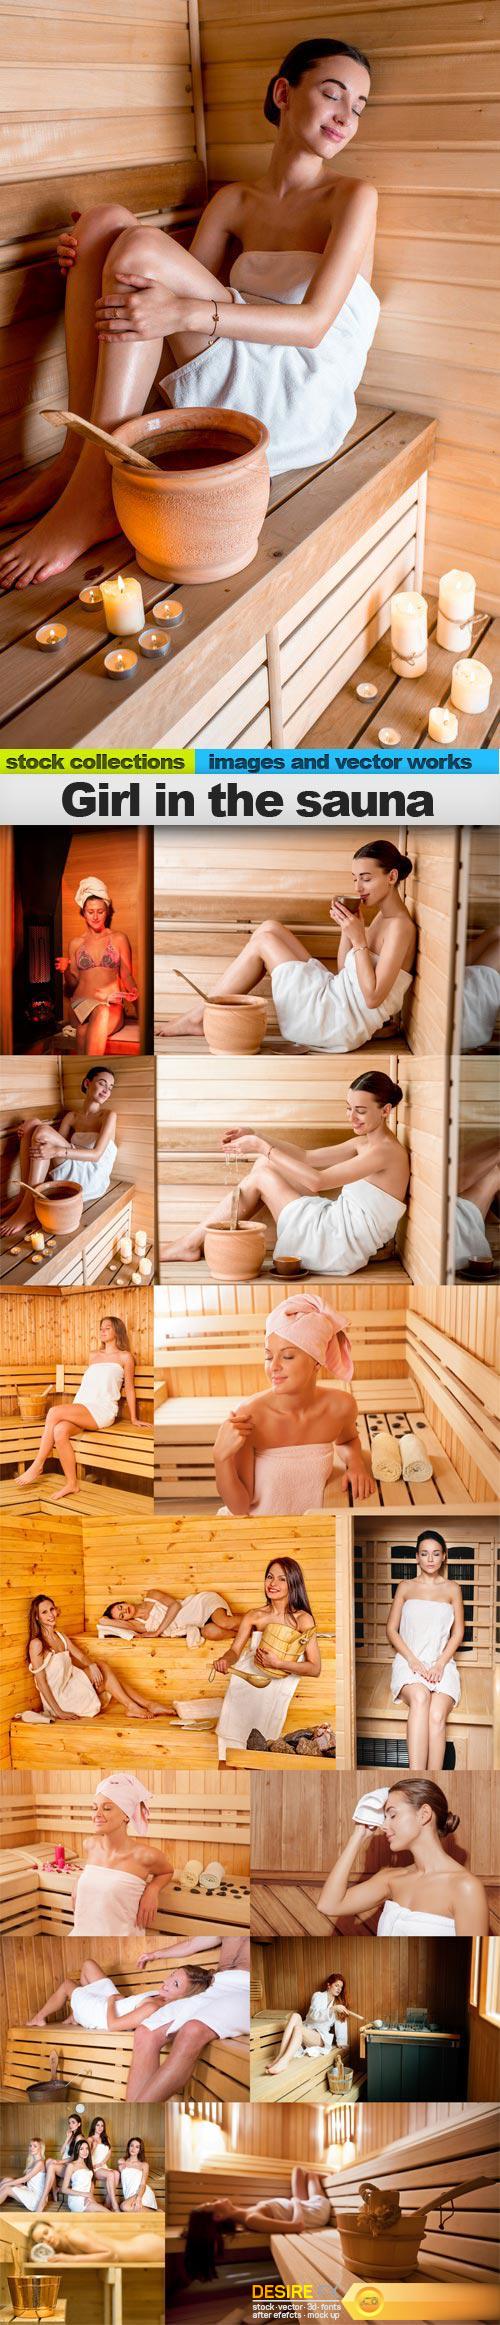 Girl in the sauna, 15 x UHQ JPEG